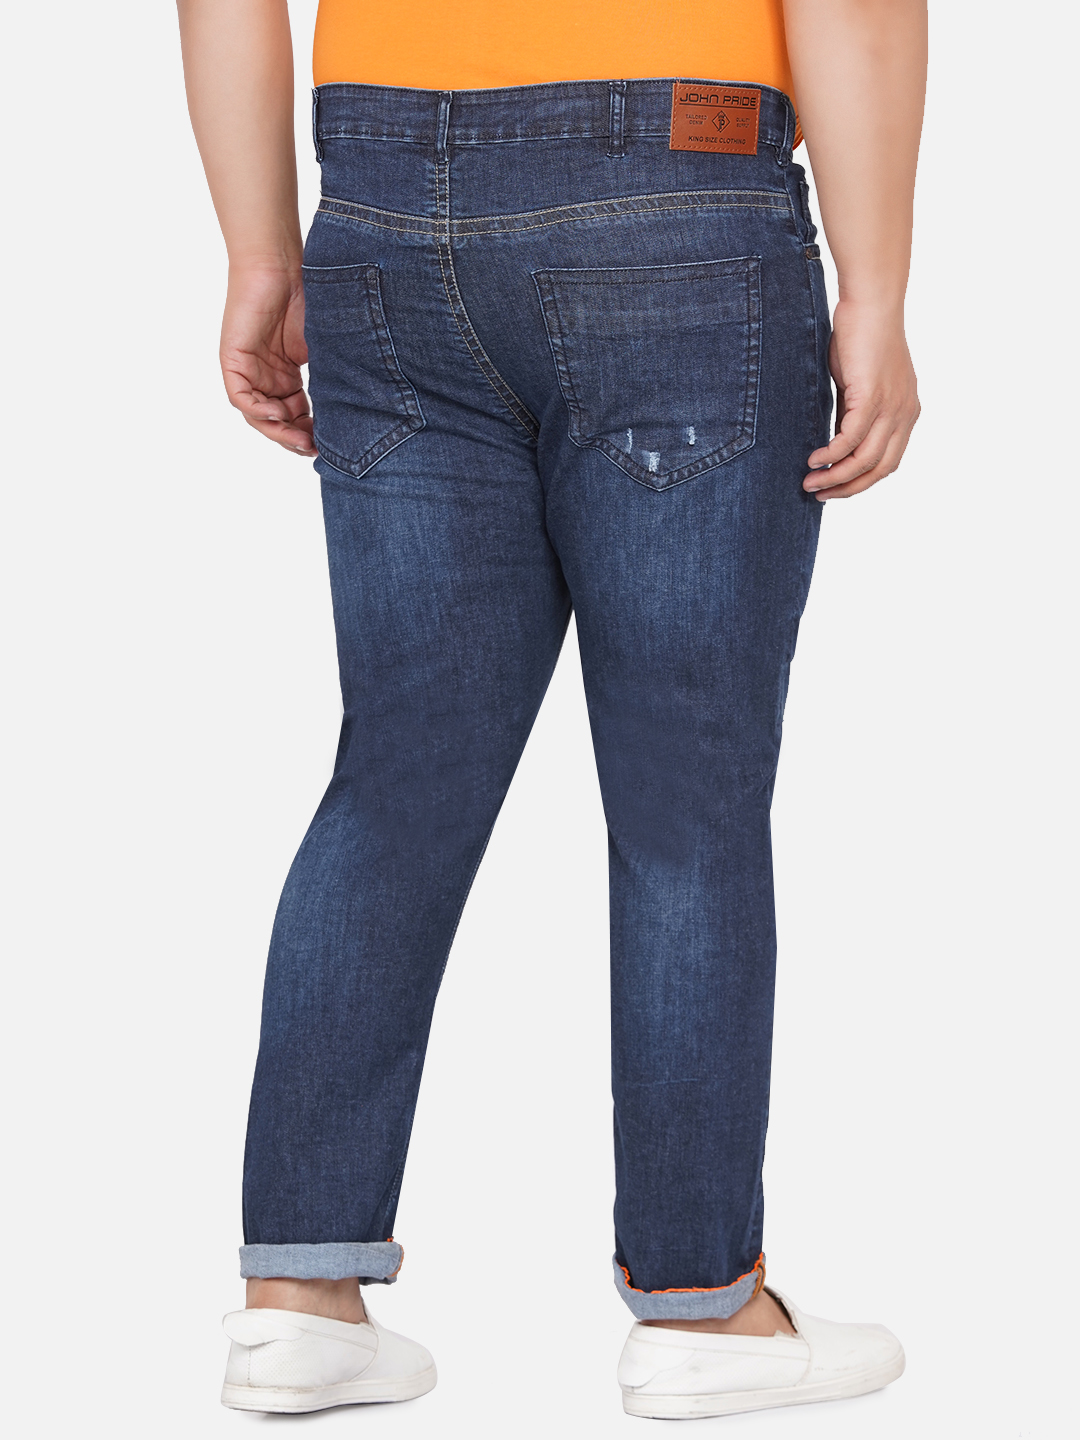 bottomwear/jeans/PJPJ12255/pjpj12255-5.jpg